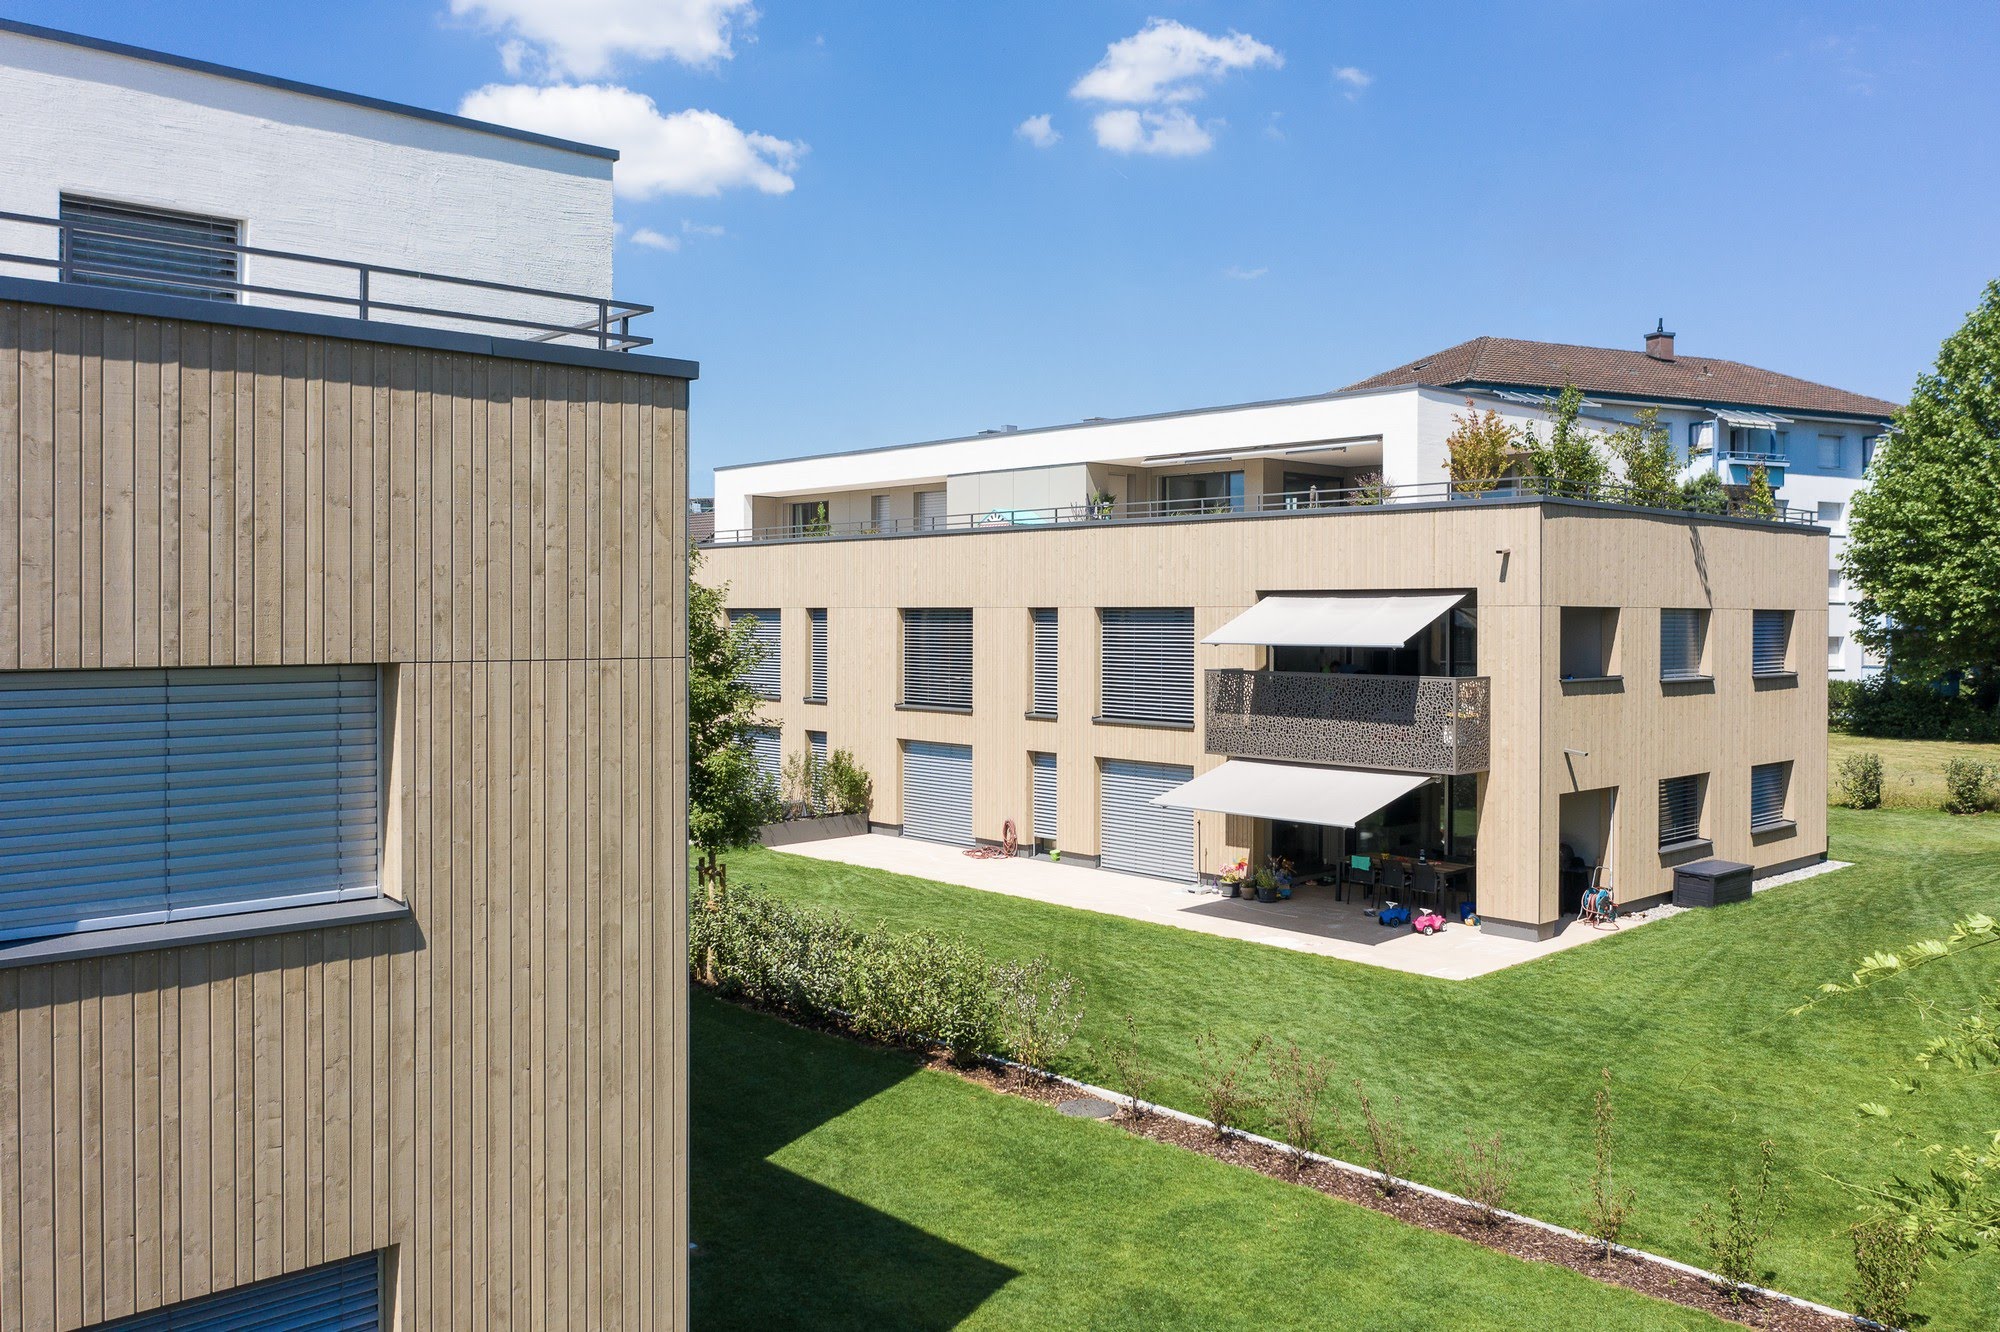 Wohnen MFH Wohnüberbauung in Oberkirch Architektur,Wohnungsbau,Wohnhäuser,Einfamilienhäuser,Mehrfamilienhäuser